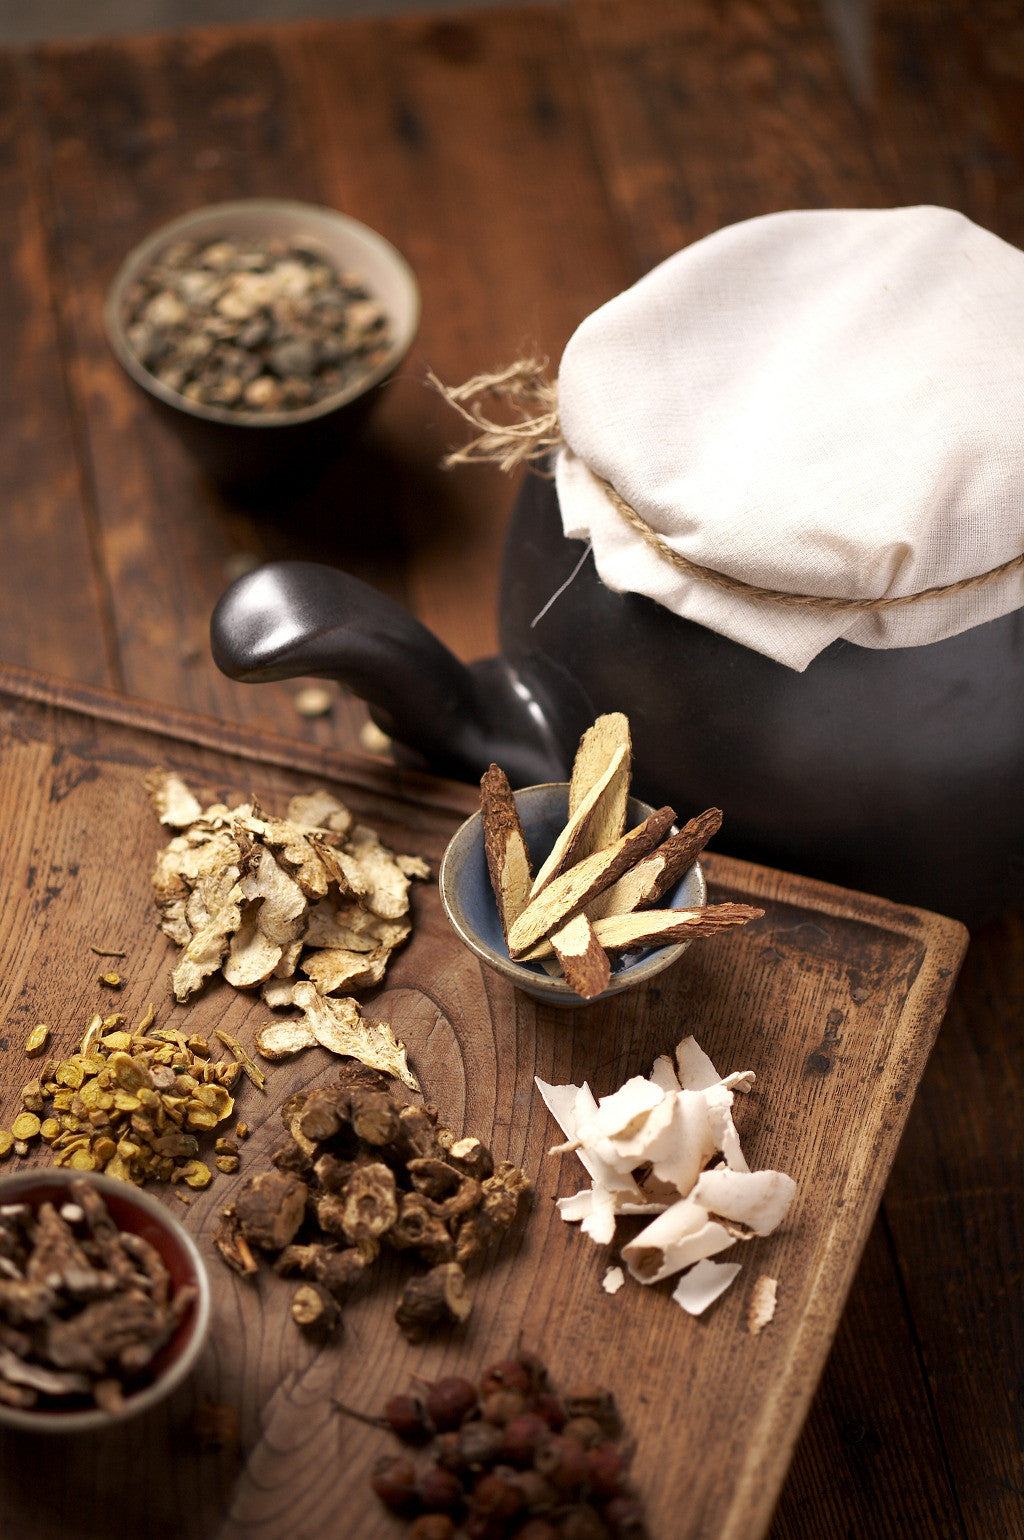 HI-REVIEWS: Oriental Herbal Ingredients Skincares?